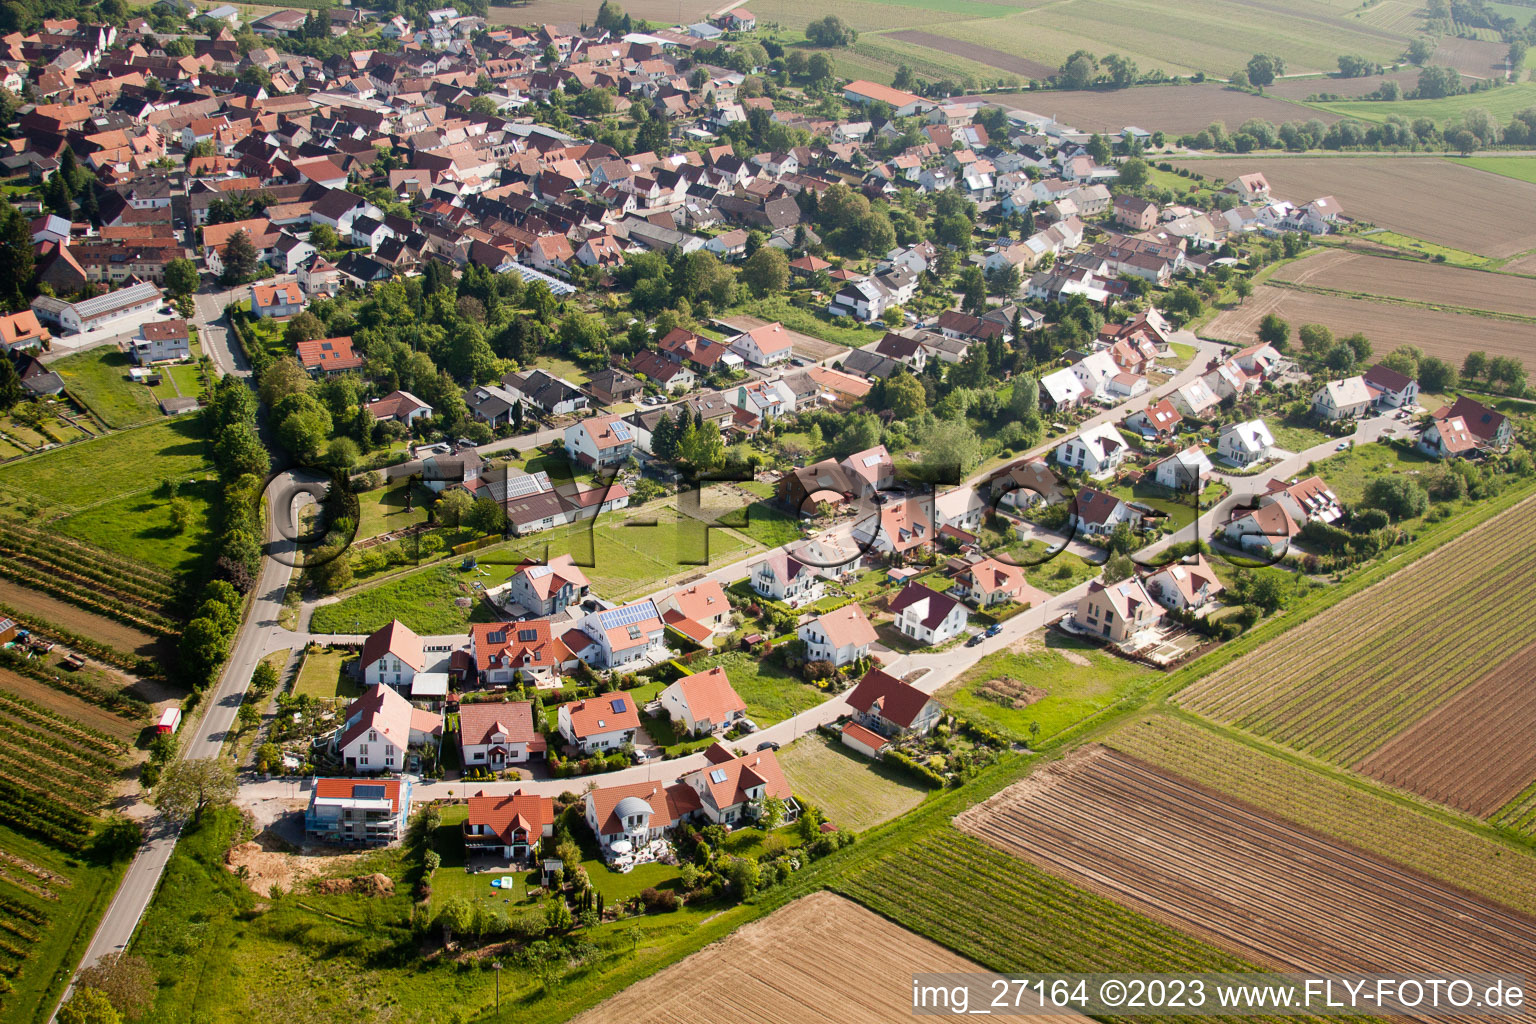 District Mörzheim in Landau in der Pfalz in the state Rhineland-Palatinate, Germany seen from a drone